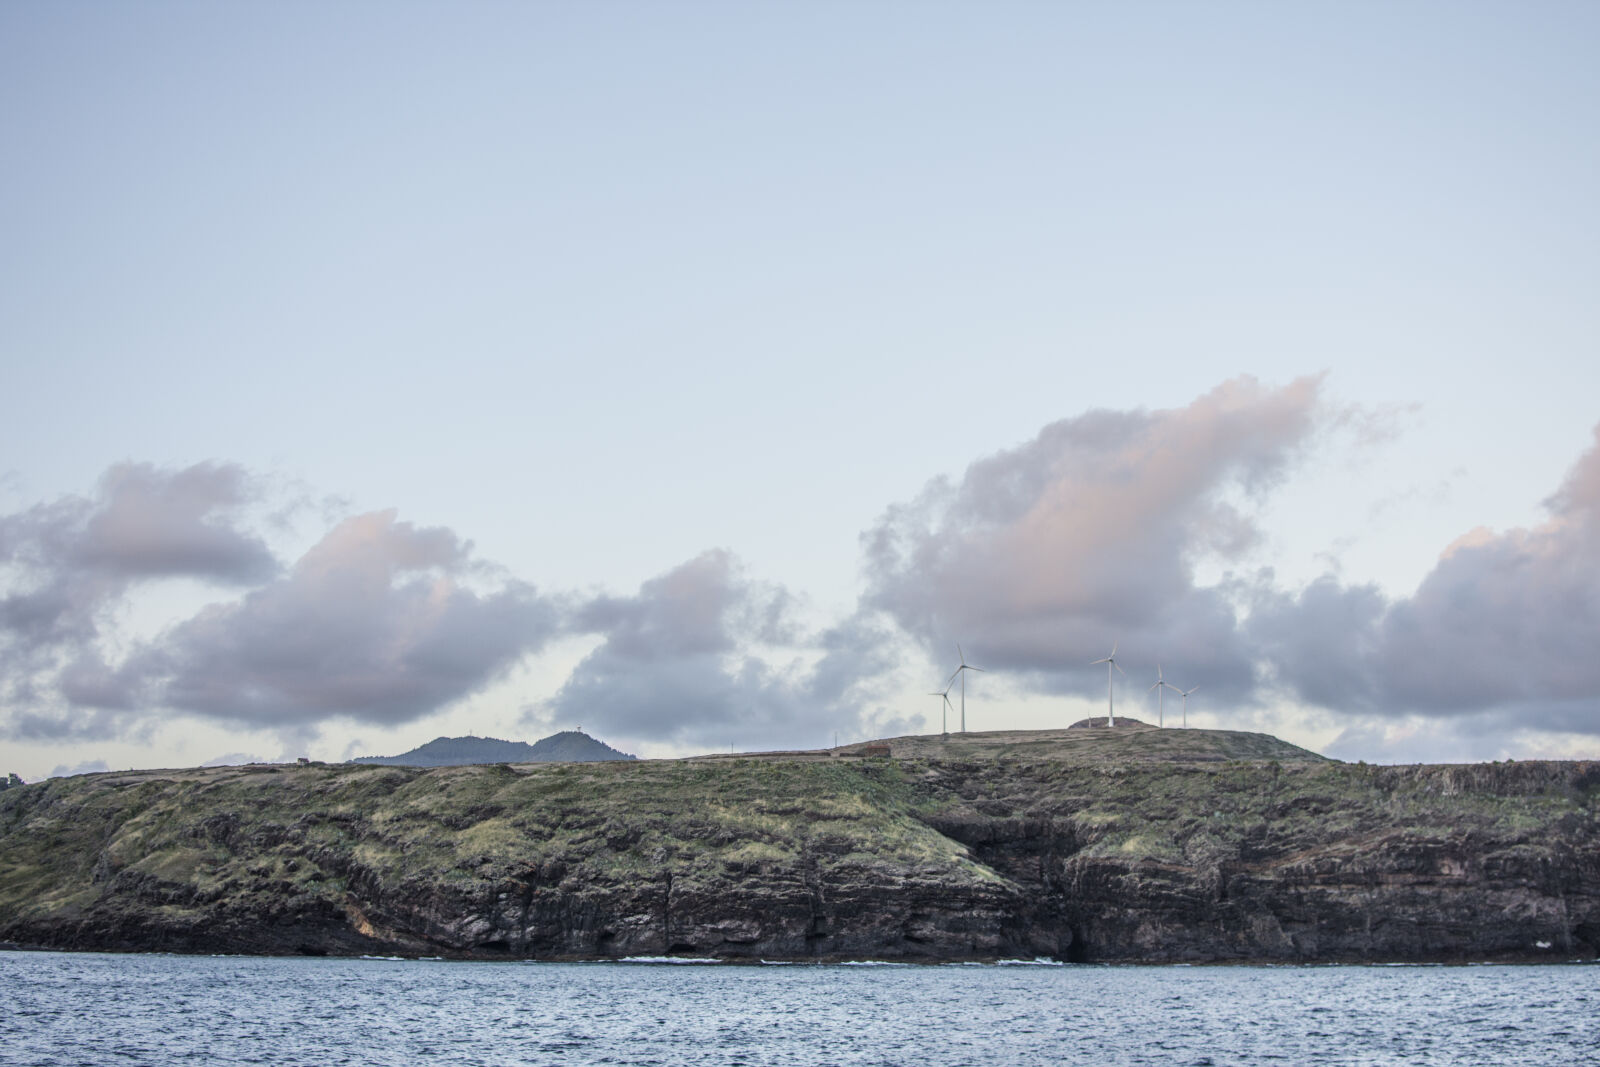 Nikon AF-S DX Nikkor 35mm F1.8G sample photo. Island, landscape, maria, pexels photography